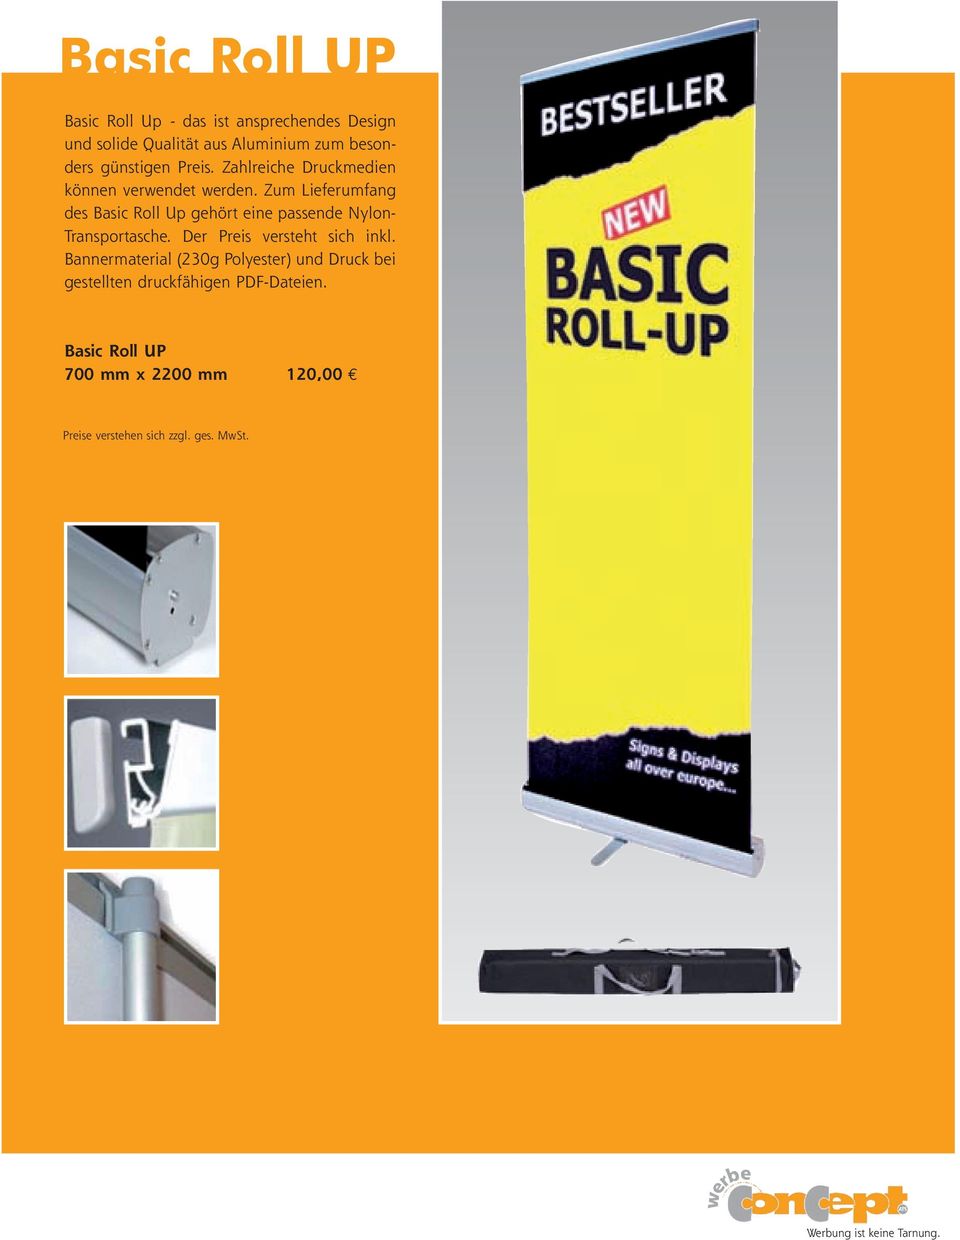 Zum Lieferumfang des Basic Roll Up gehört eine passende Nylon- Transportasche.